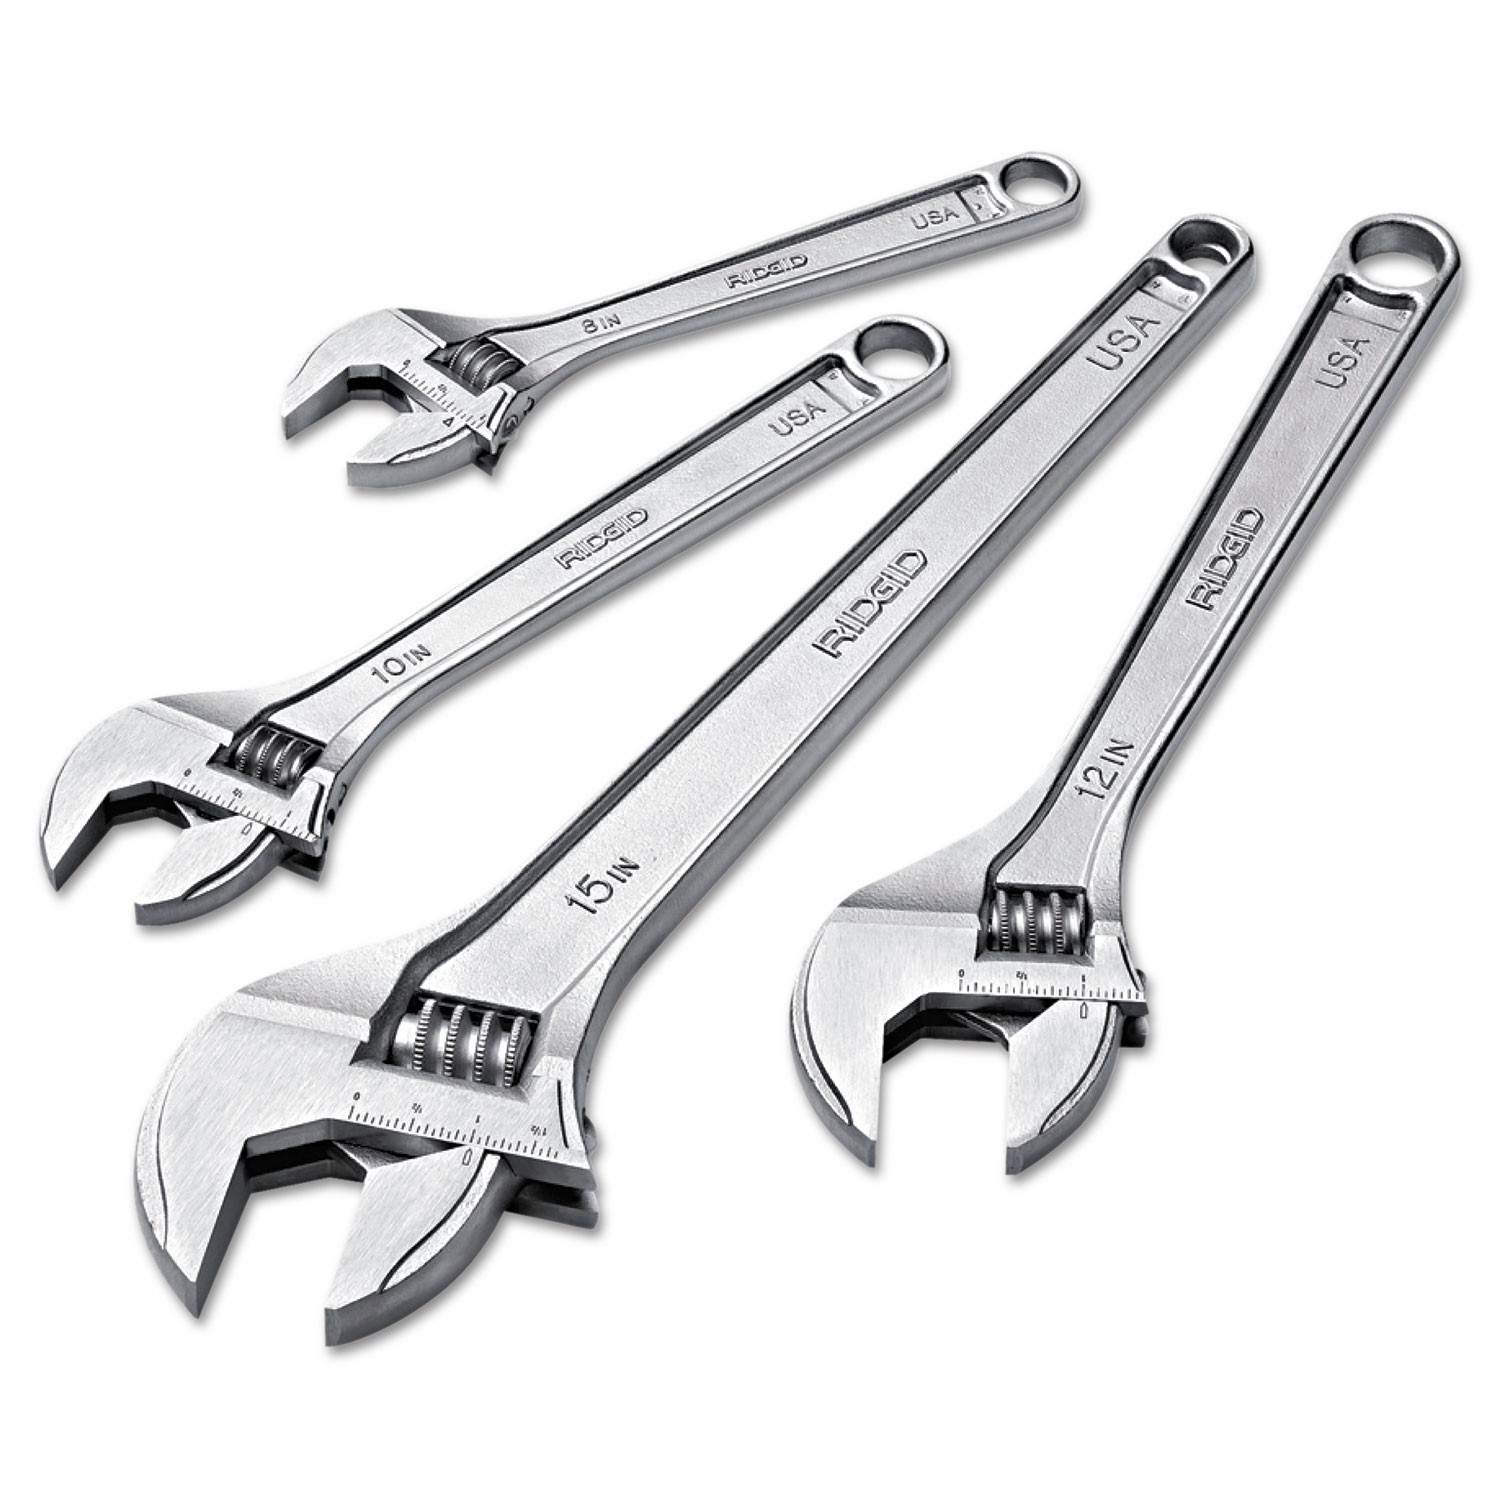 RIDGID Adjustable Wrench, 18 Long, 2 7/16 Jaw Capacity, Chrome Finish